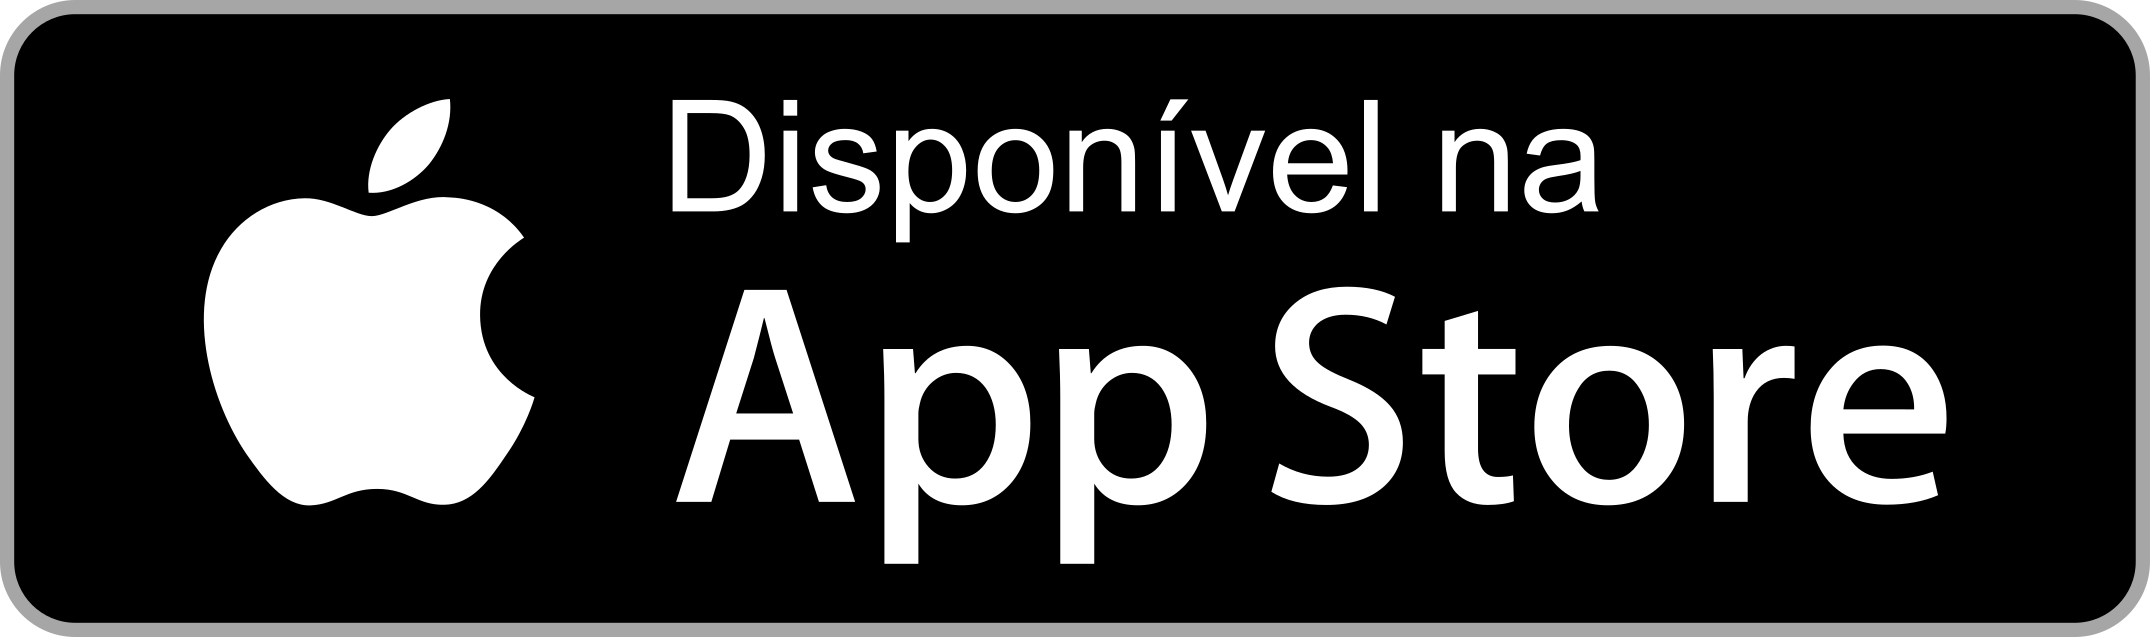 disponivel-na-app-store-botao-5.png